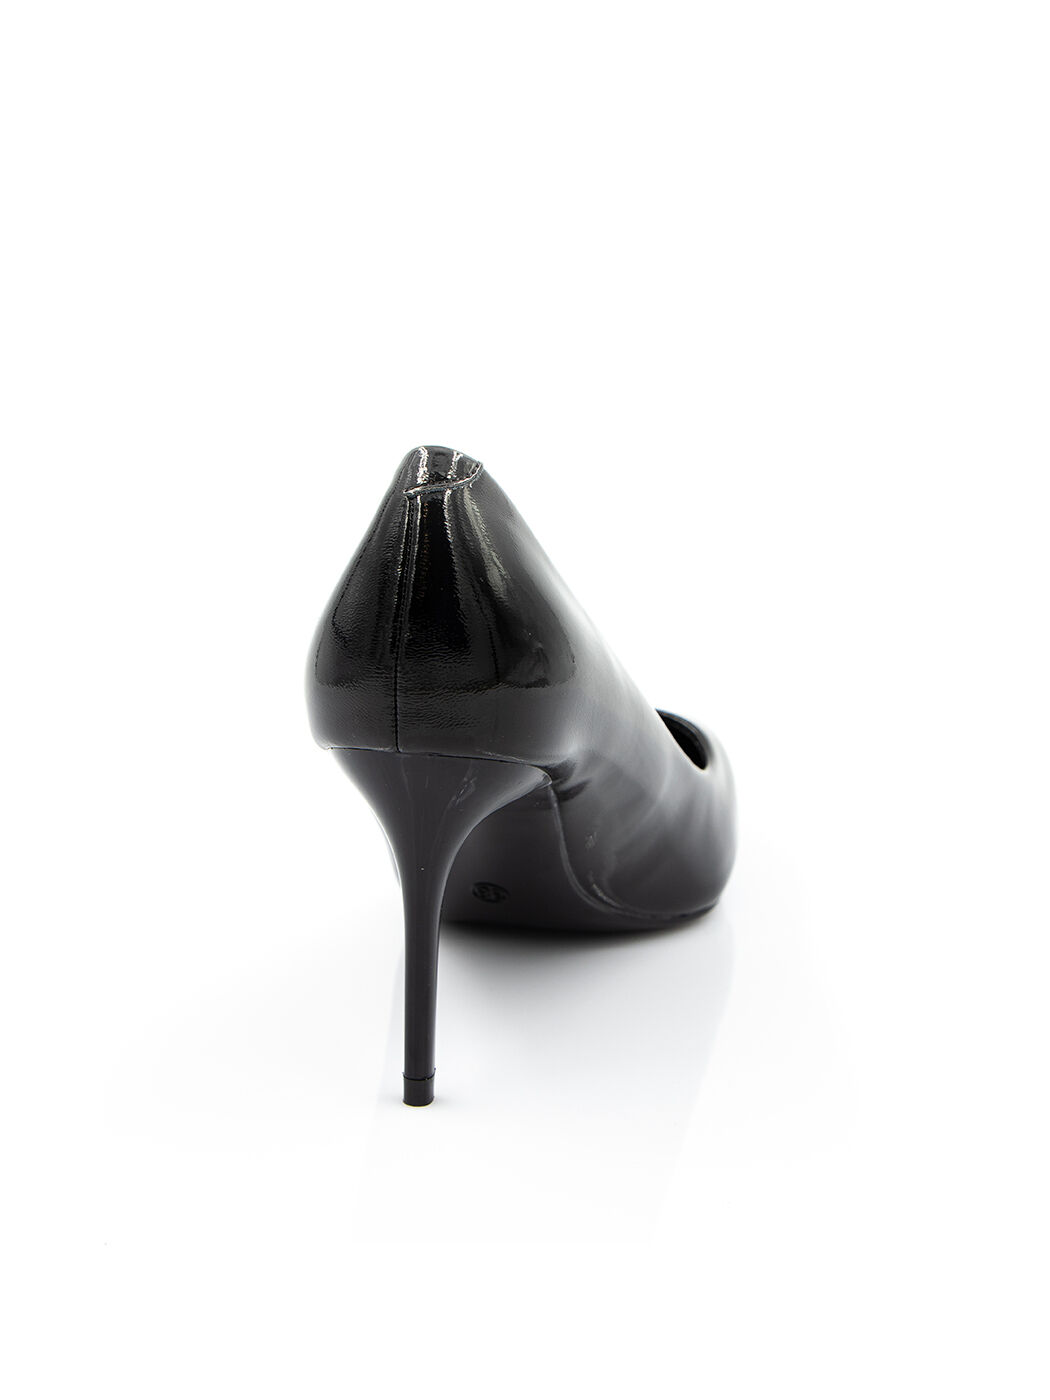 Туфлі жіночі чорні штучний лак каблук шпилька демісезон від виробника DM вид 1